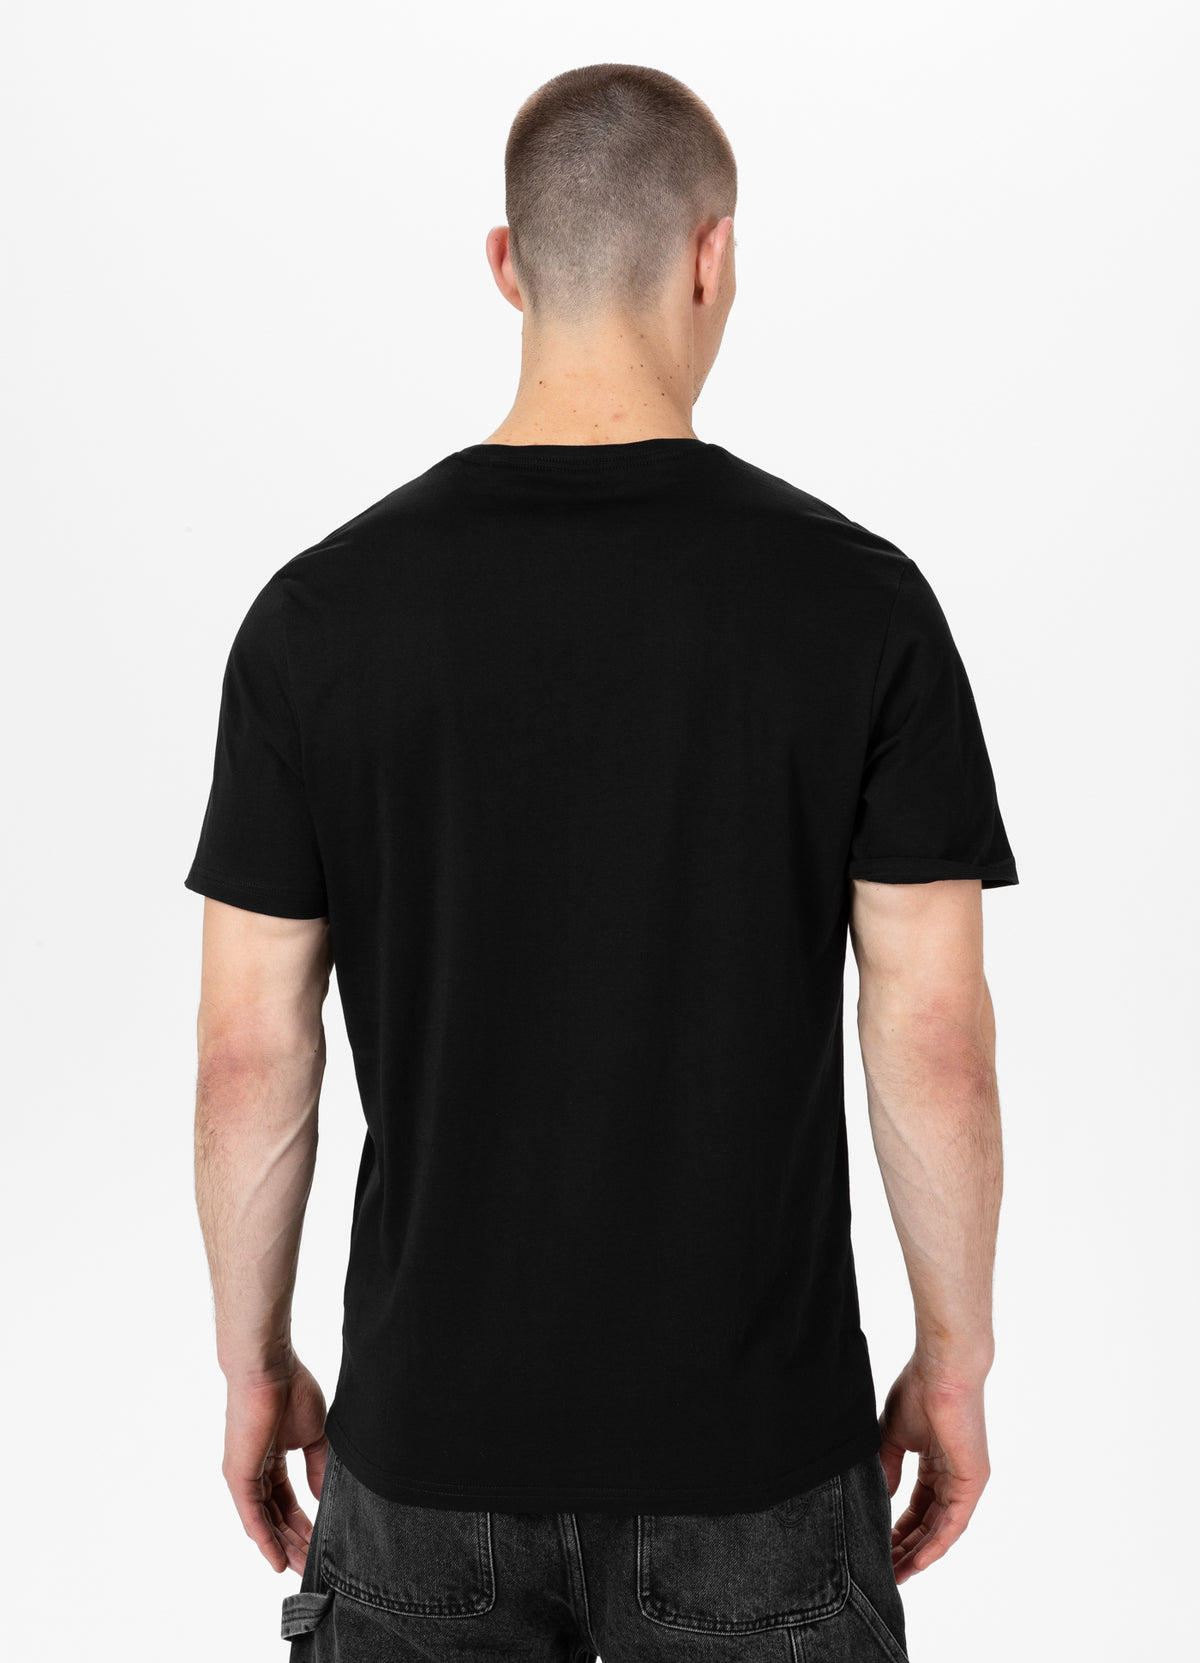 SMALL LOGO Lightweight Black T-shirt